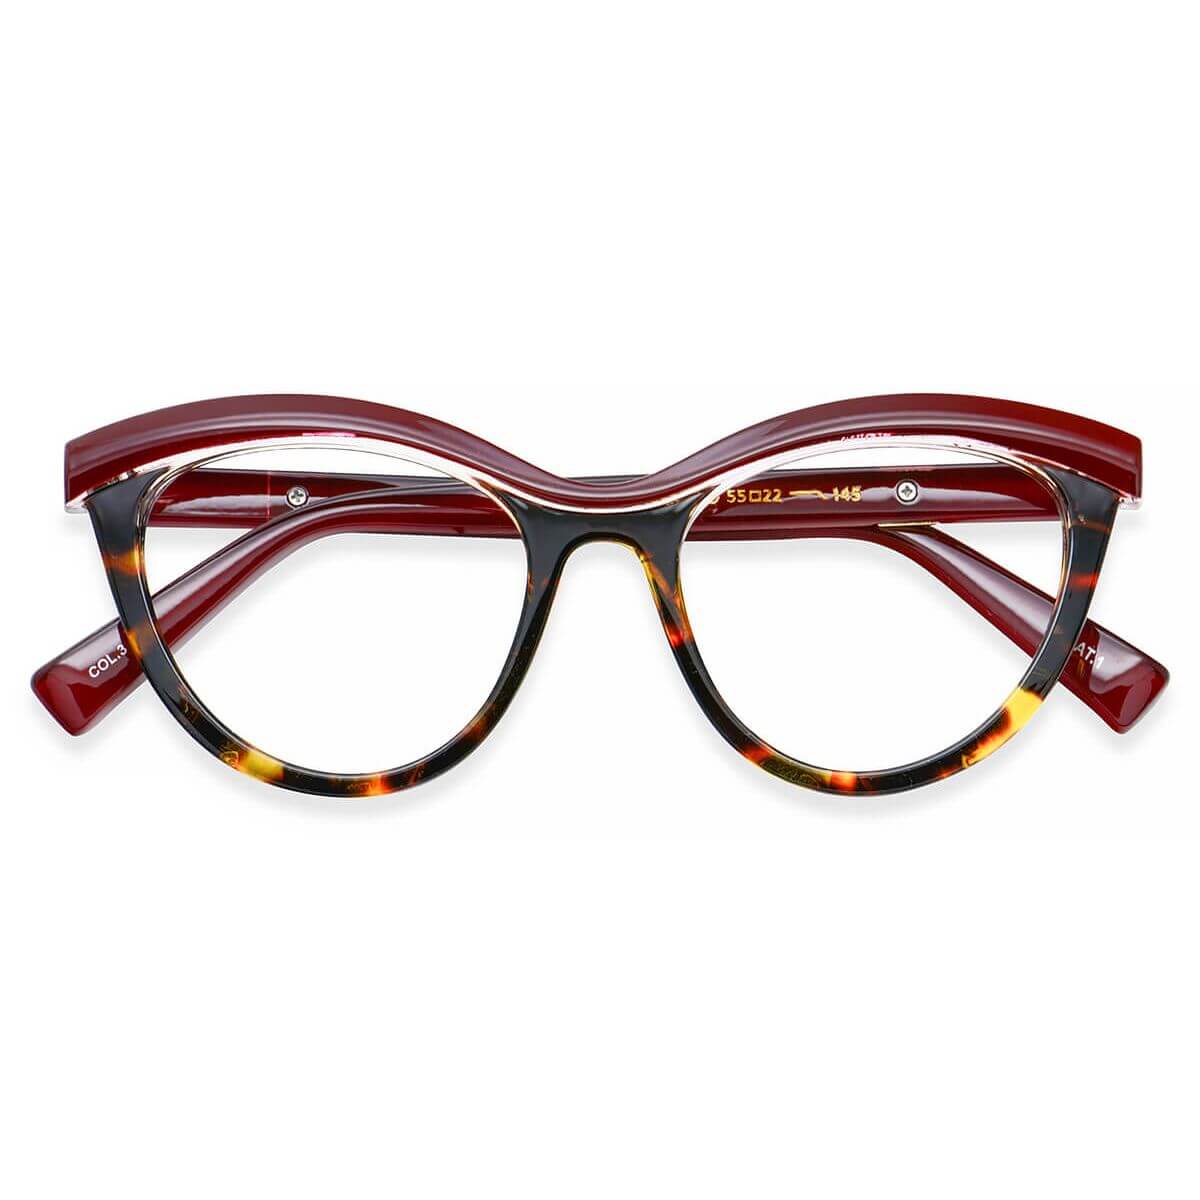 97565 Cat-eye Red Eyeglasses Frames | Leoptique